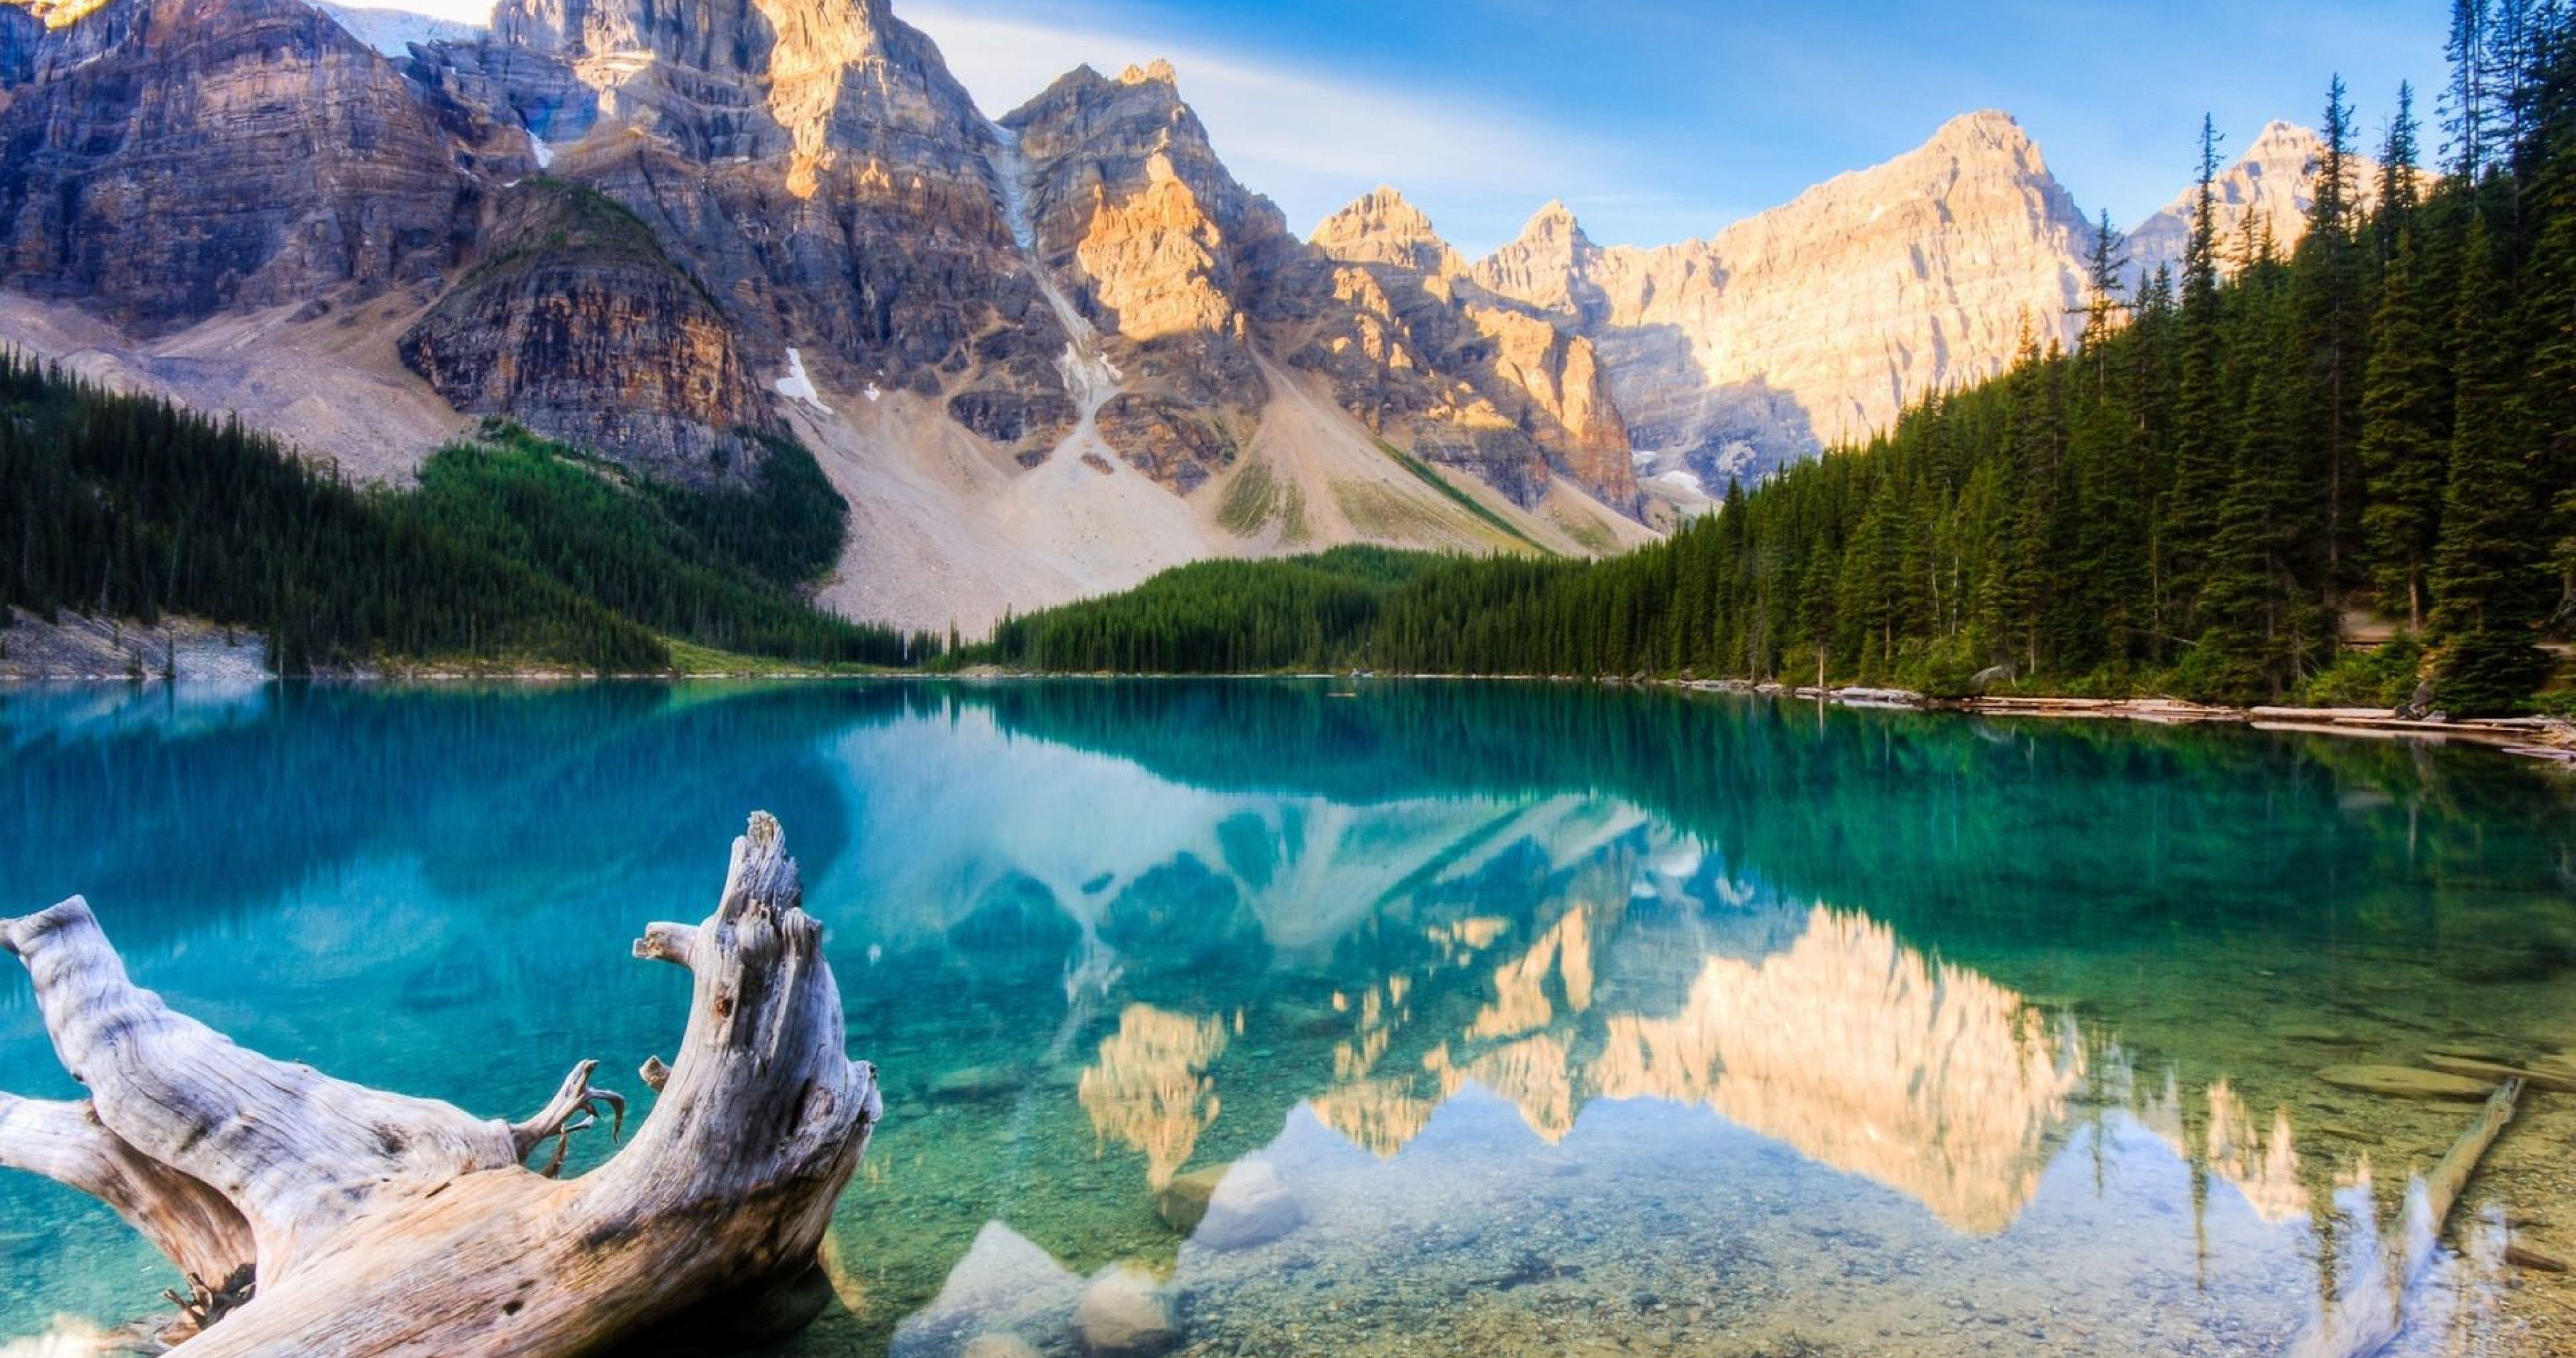 Обои на телефон самые красивые в мире. Ледниковое озеро Морейн, Канада. Национальный парк Йохо Канада. Канада озеро Морейн обои. Озеро Банф Канада.